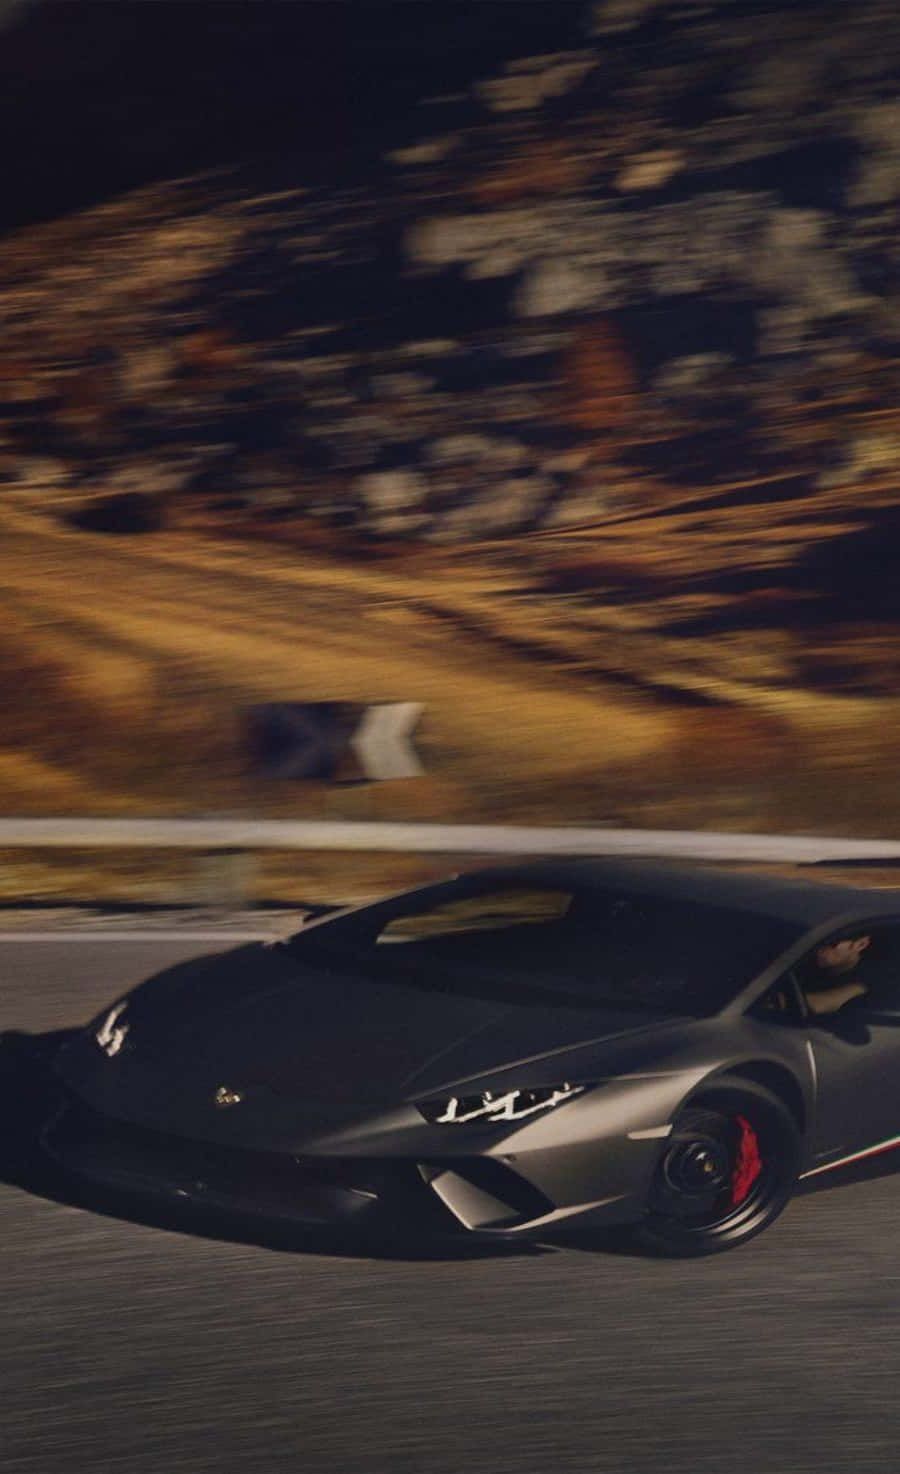 Frångatorna Till Skärmarna, Denna Svarta Lamborghini Ser Lika Fantastisk Ut På En Smartphone. Wallpaper